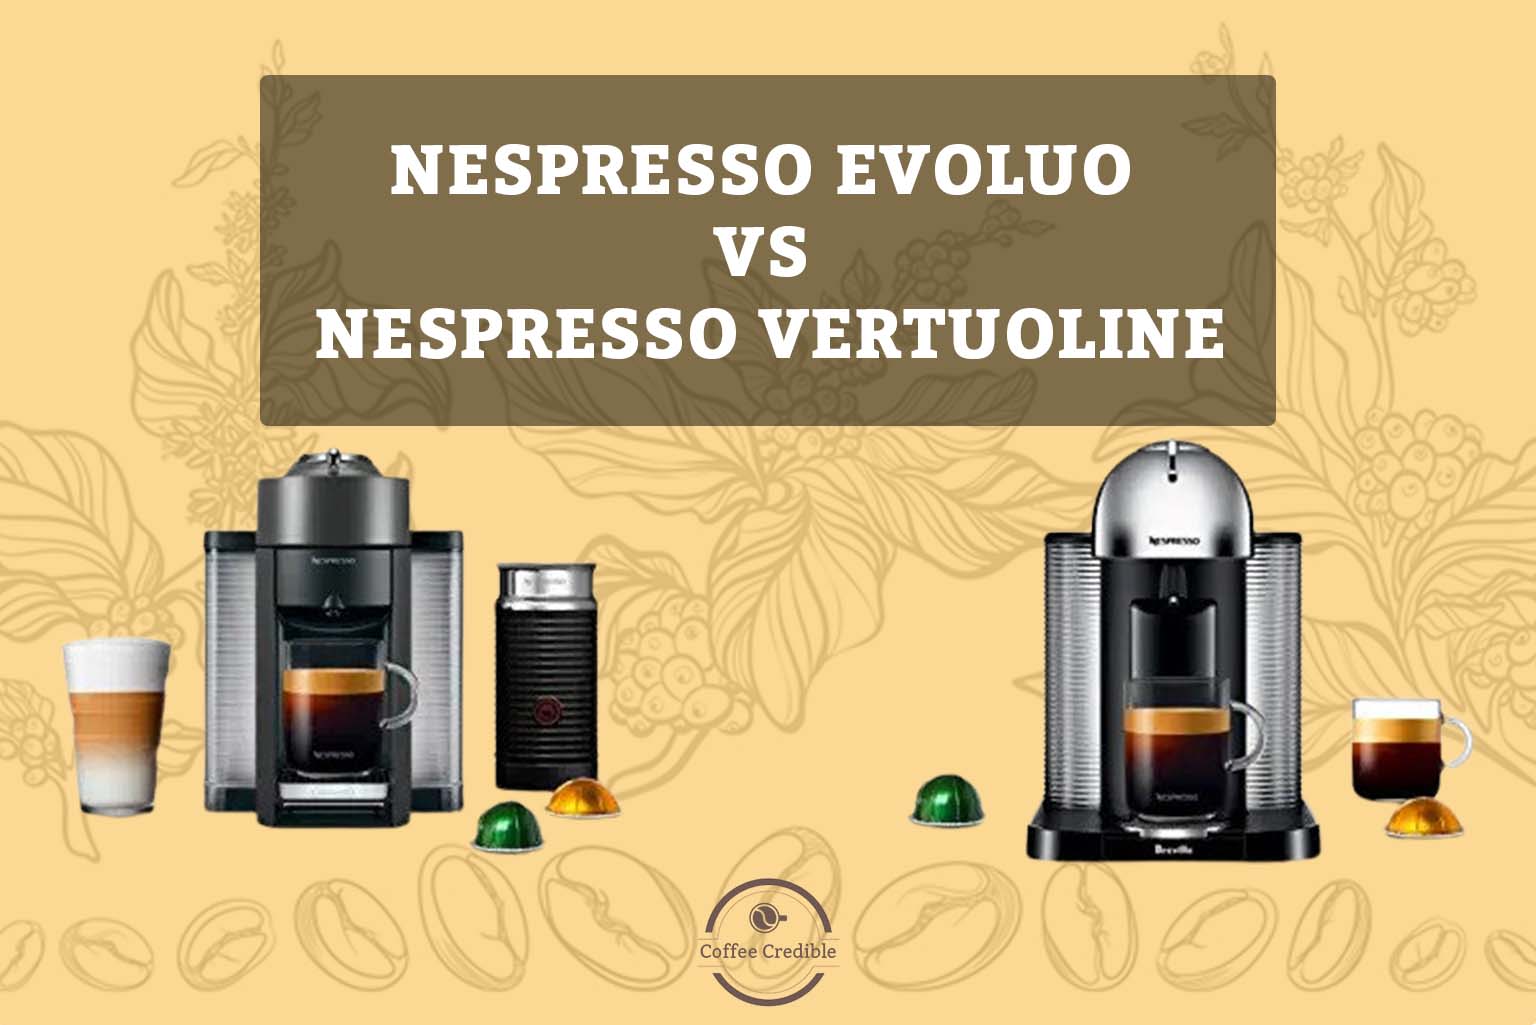 Nespresso Evoluo vs Nespresso VertuoLine, Who is the Winner?